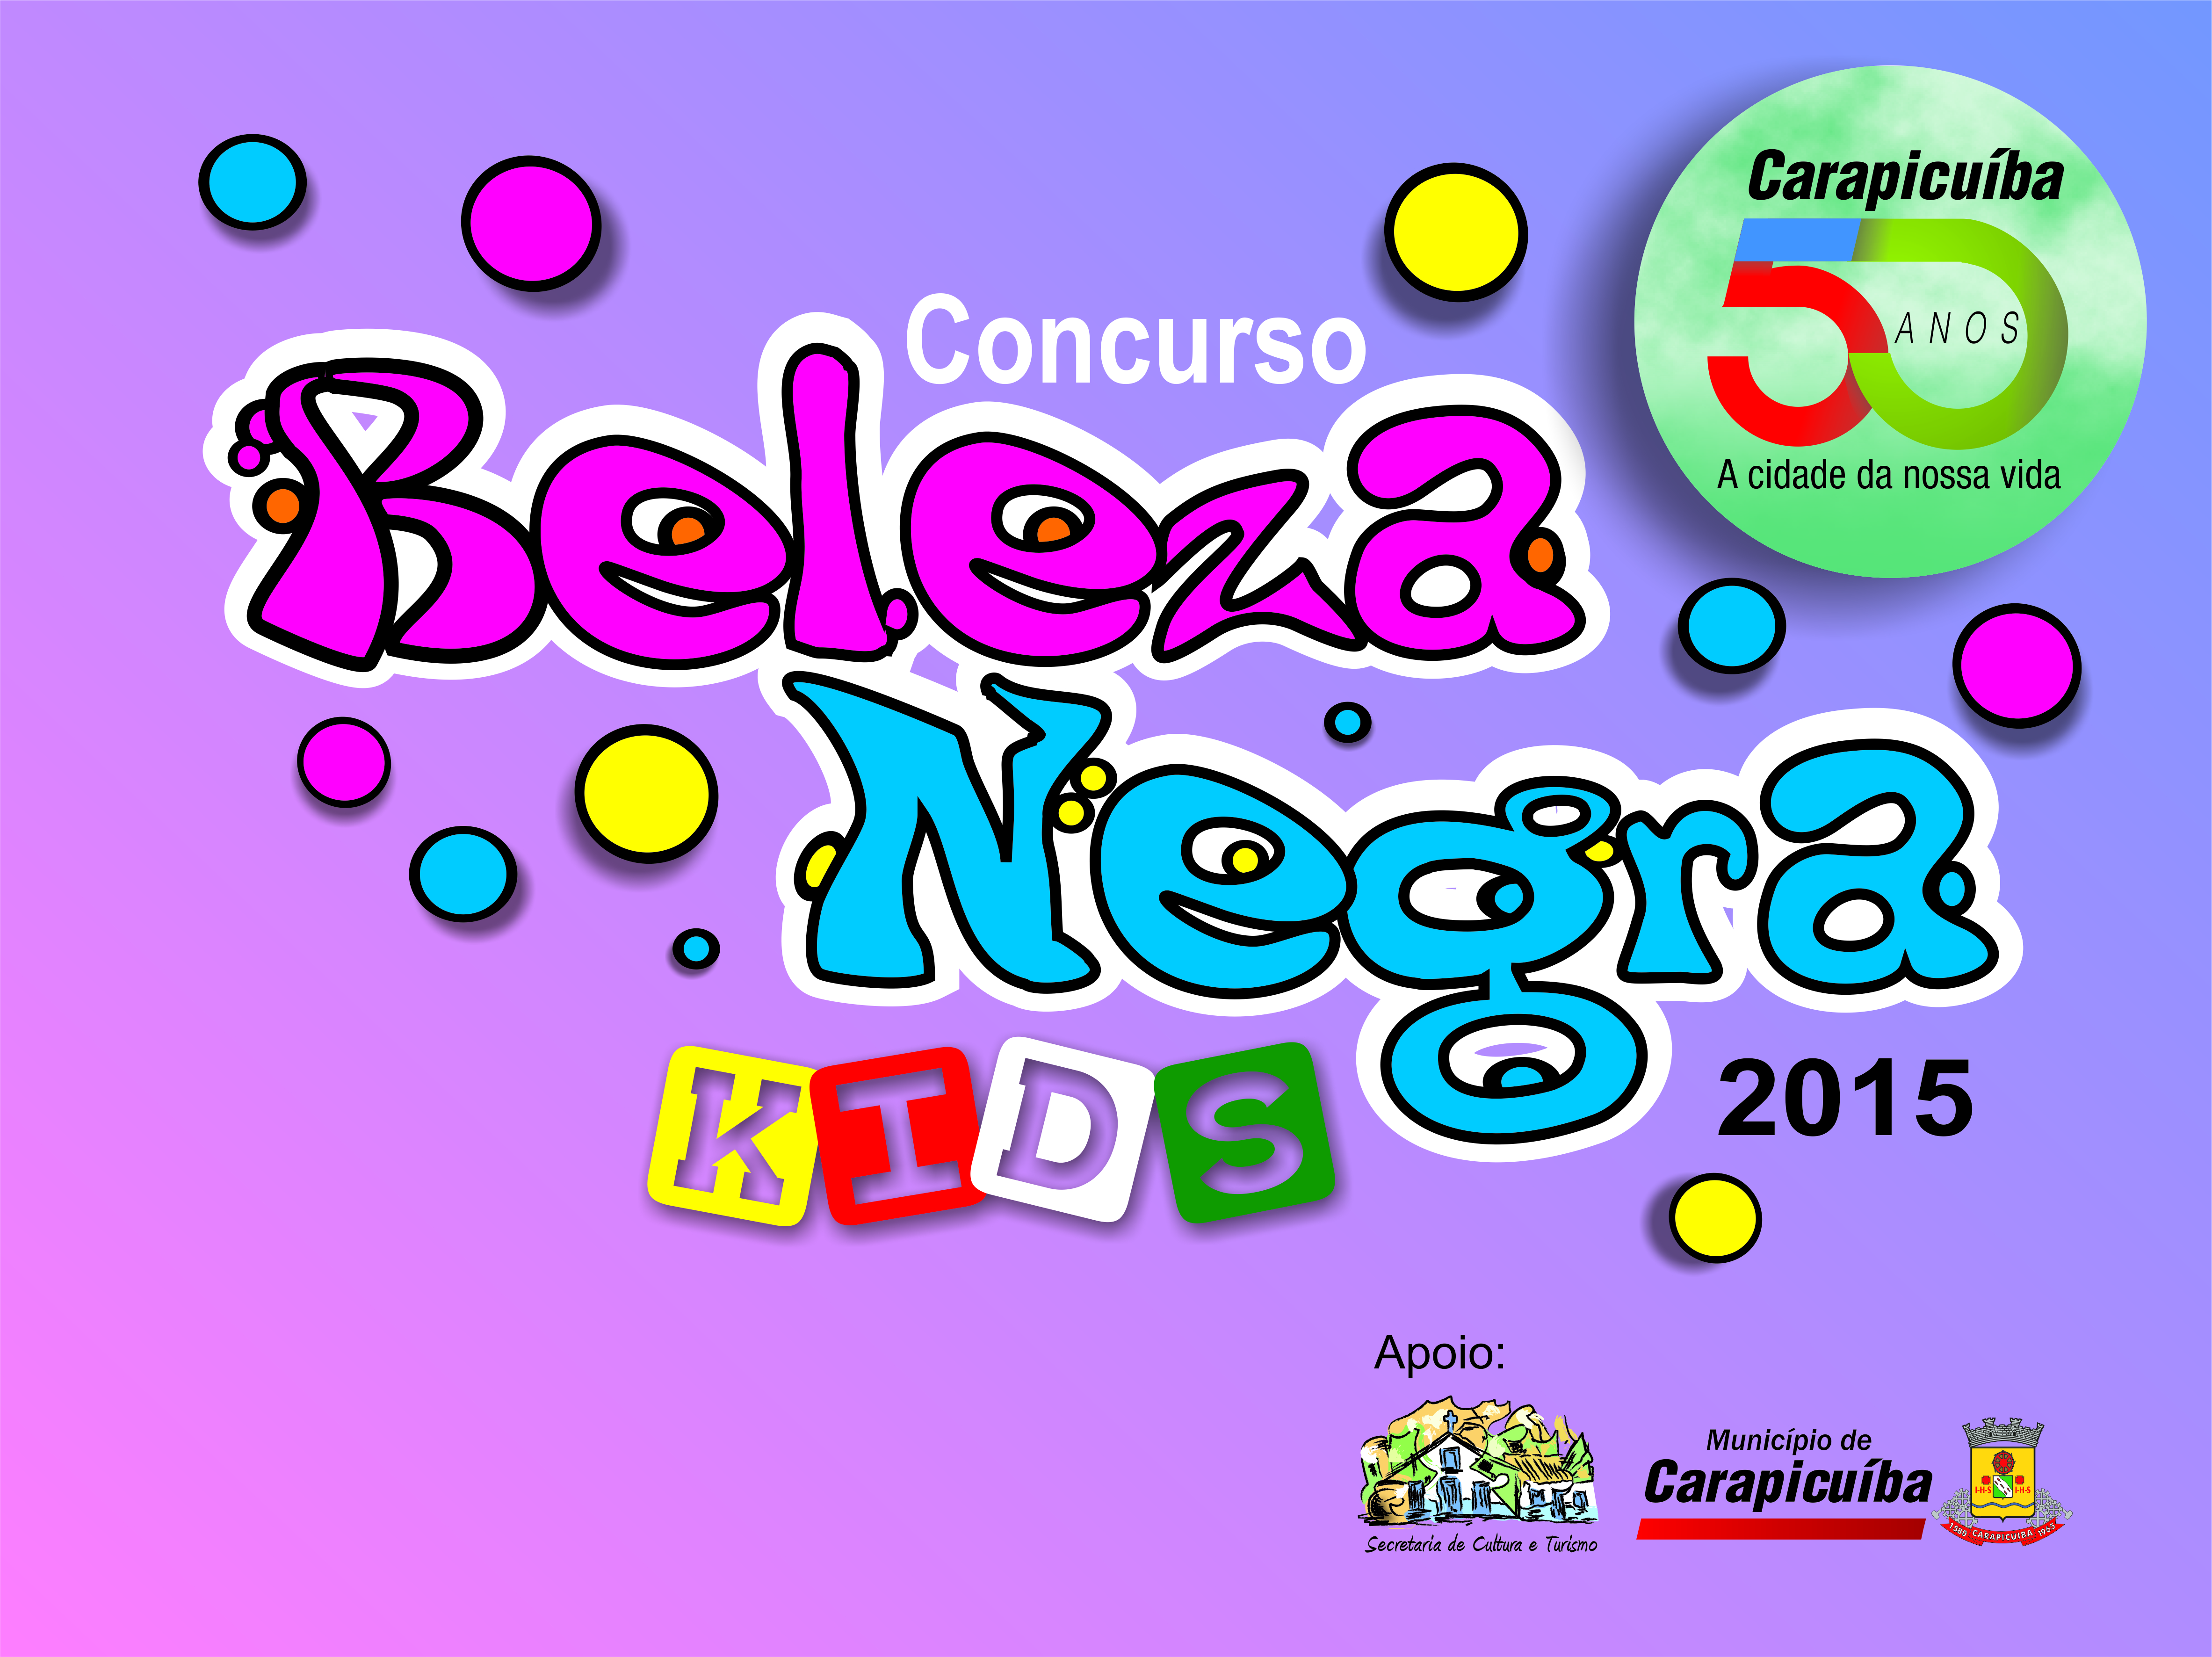 Carapicuíba realiza a 1ª edição do Concurso “Beleza Negra Kids”, neste domingo